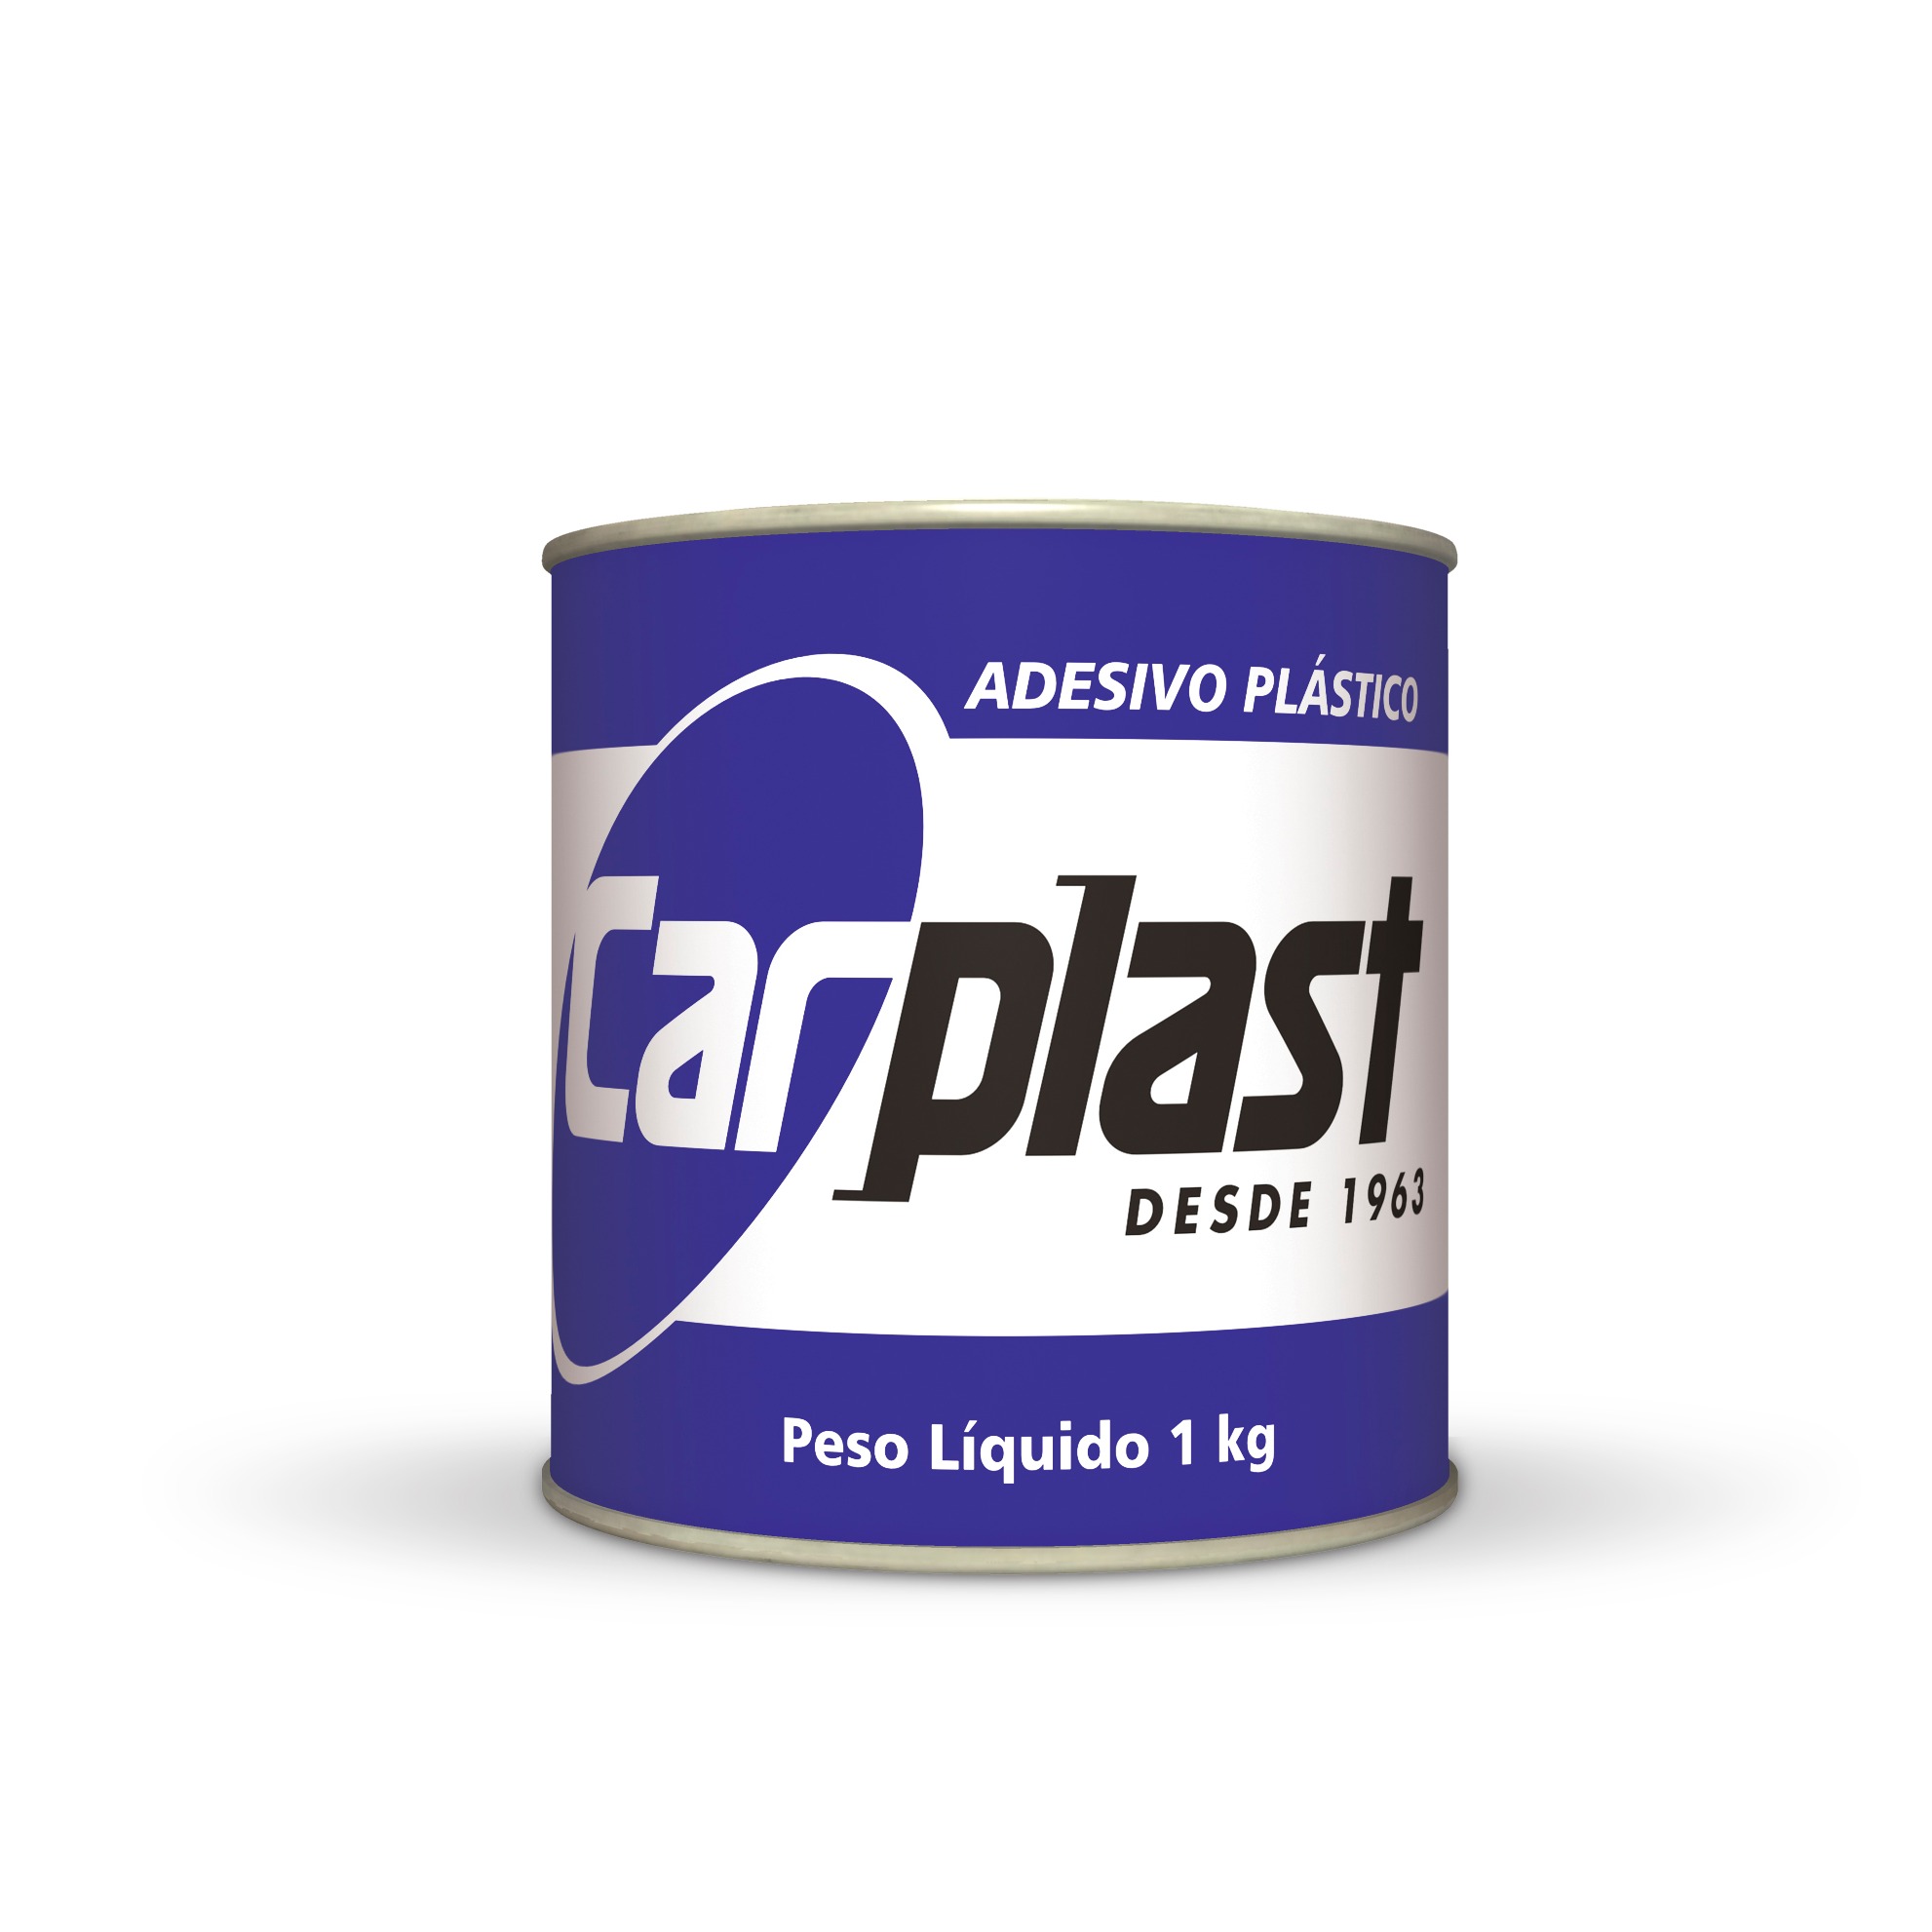 Adhesivo Plástico Gris Carplast